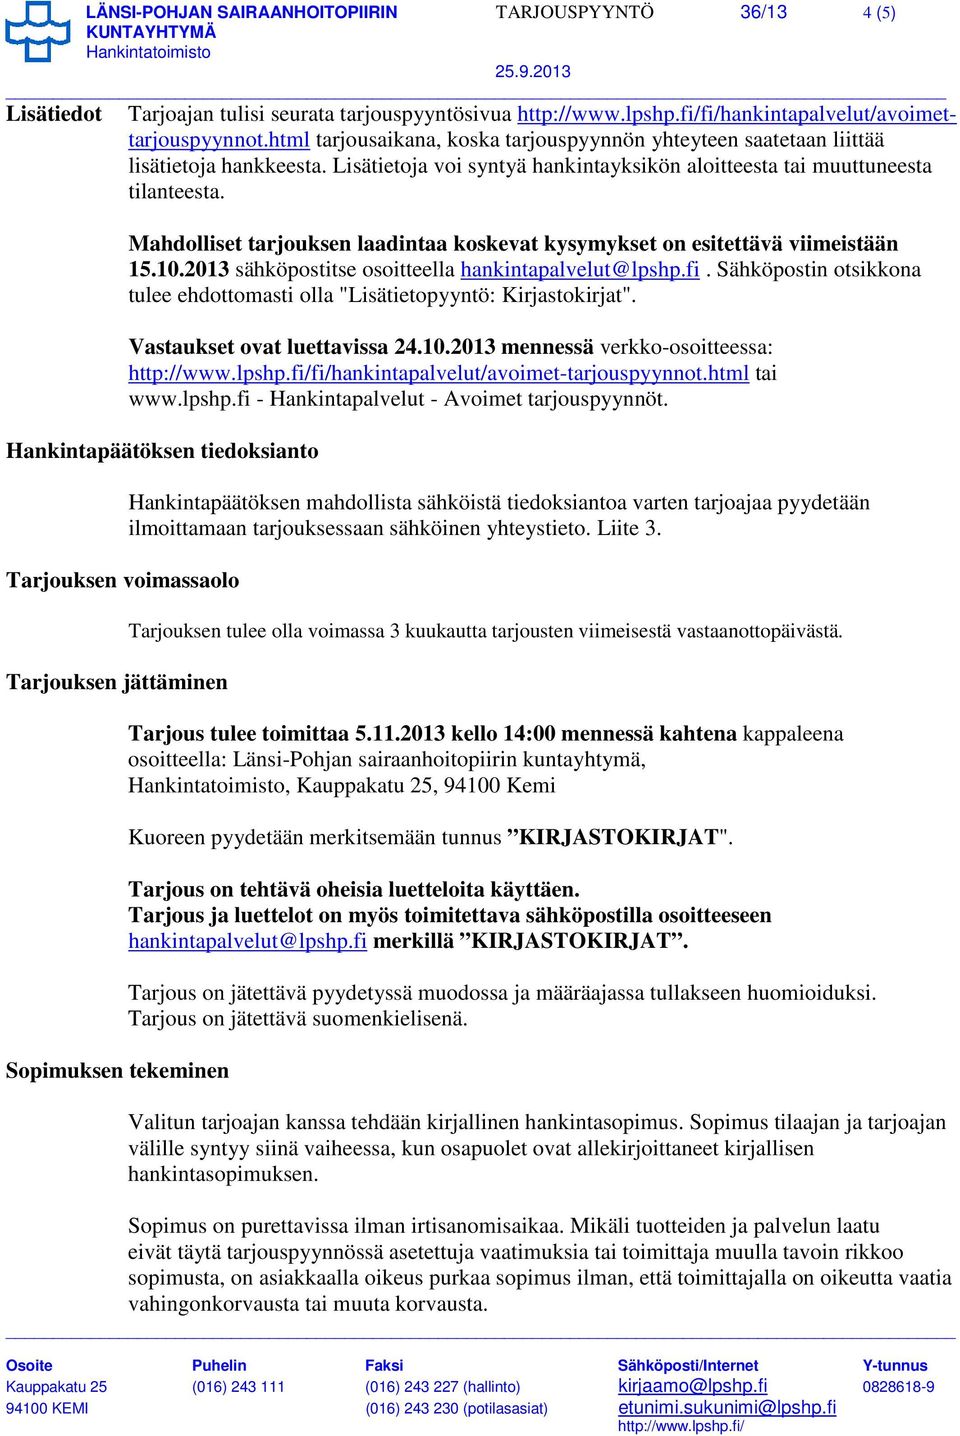 Mahdolliset tarjouksen laadintaa koskevat kysymykset on esitettävä viimeistään 15.10.2013 sähköpostitse osoitteella hankintapalvelut@lpshp.fi.